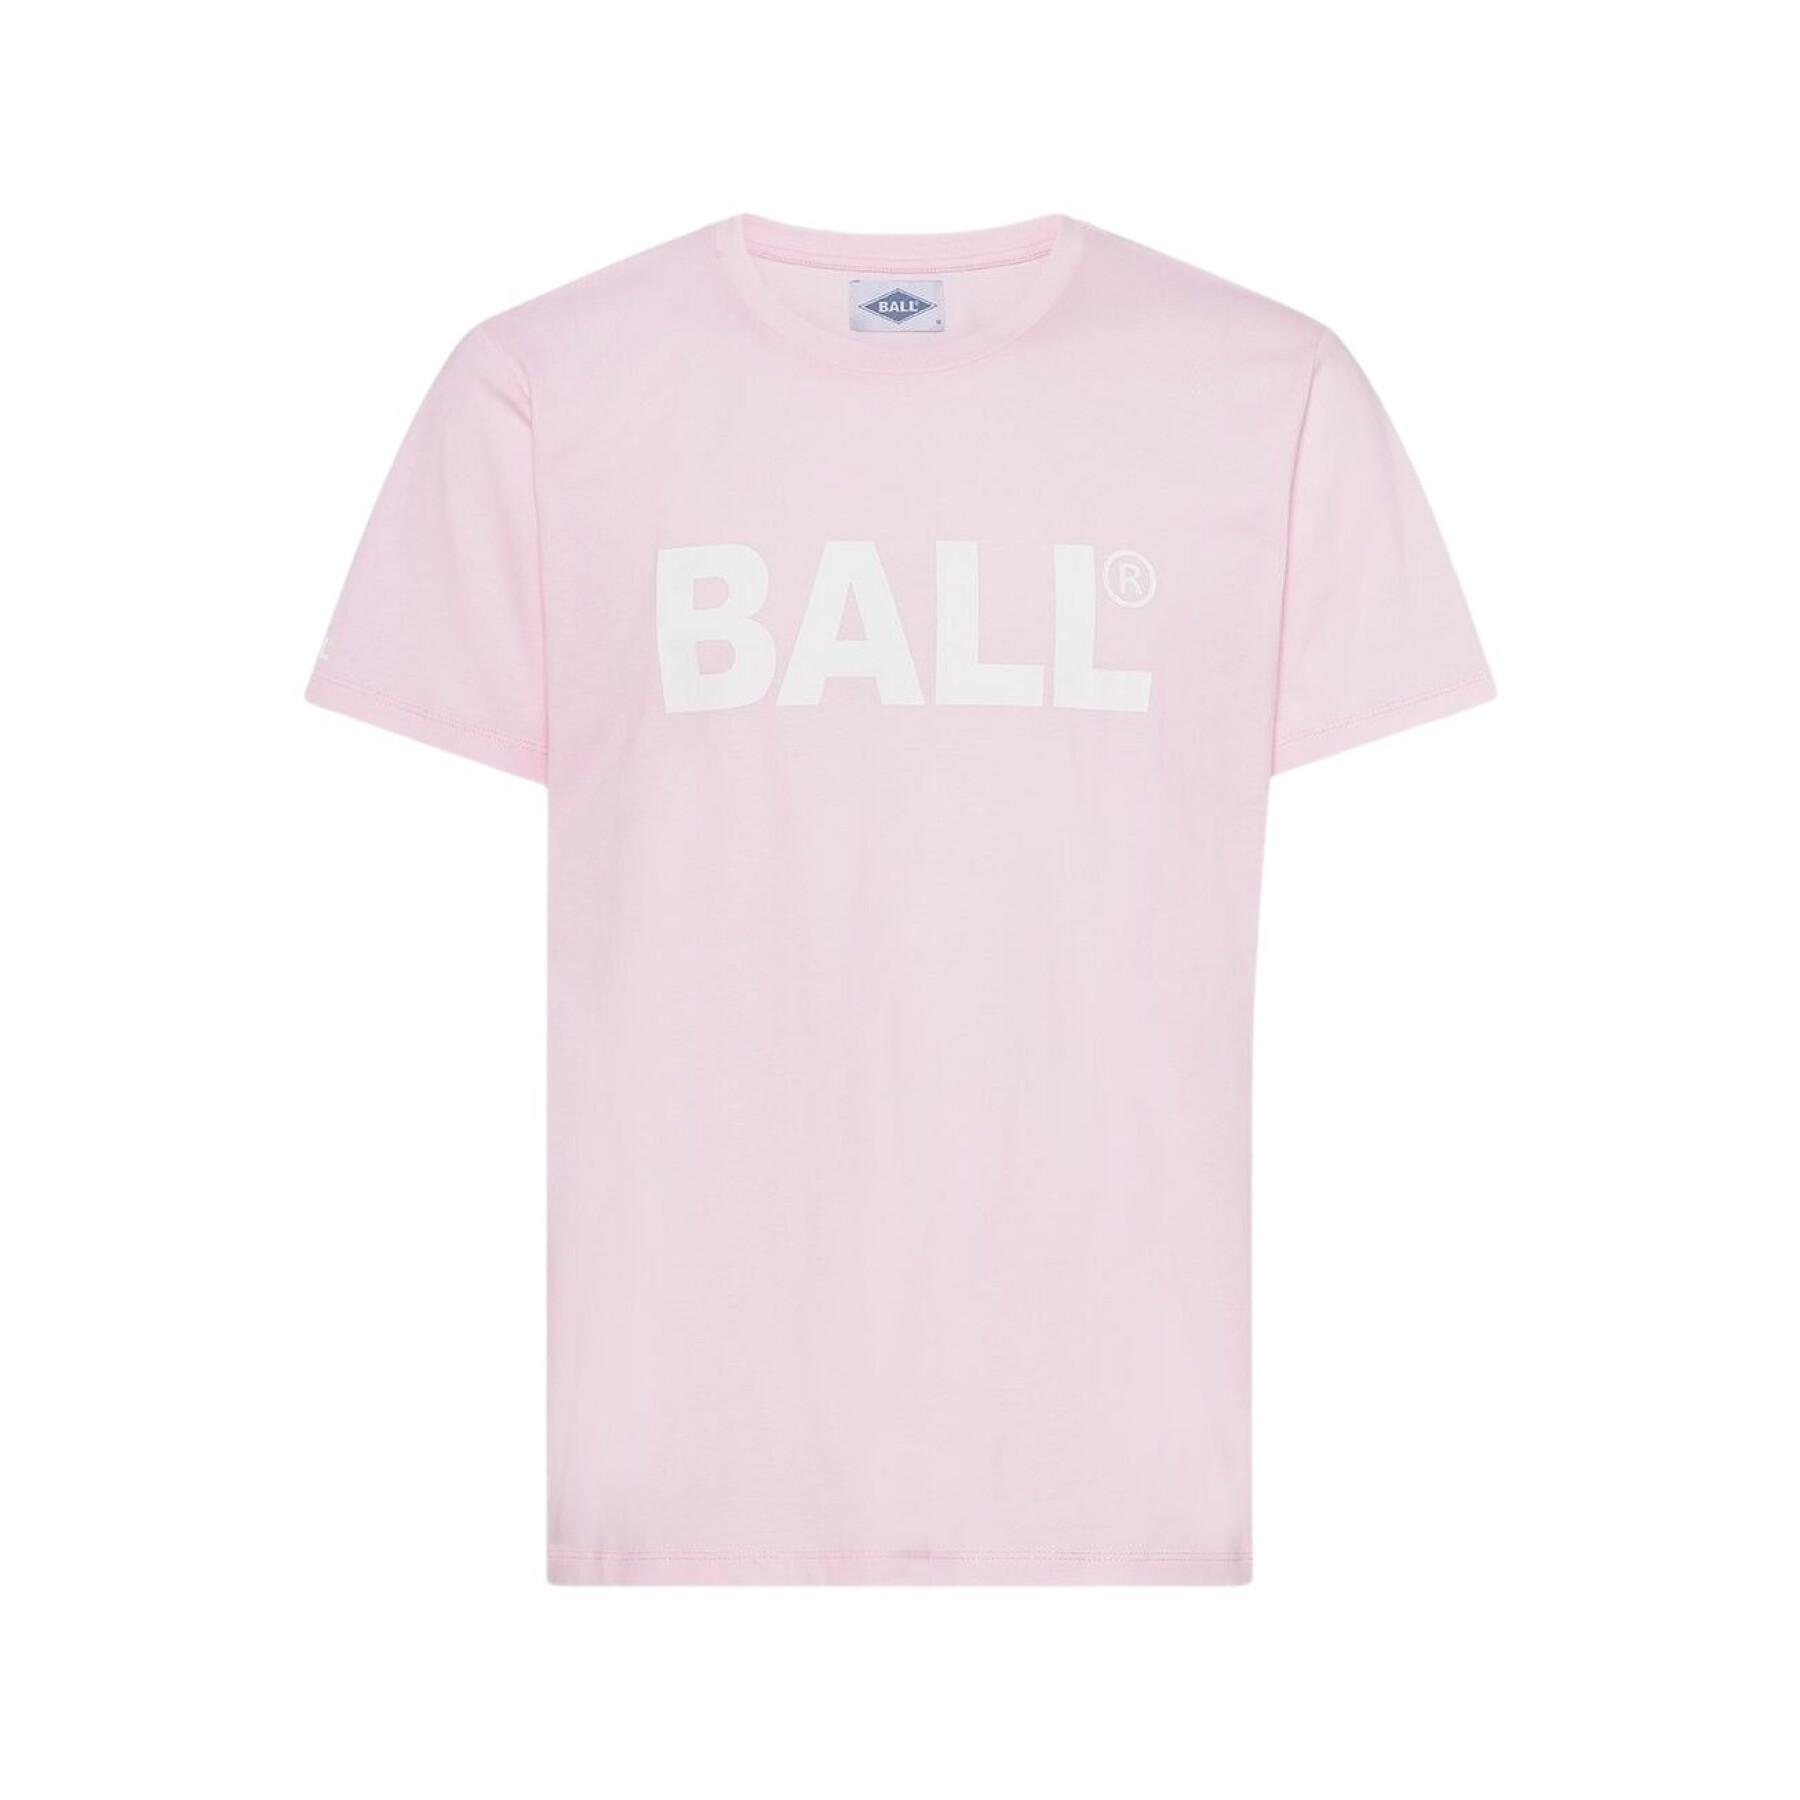 T-shirt Ball H. Long